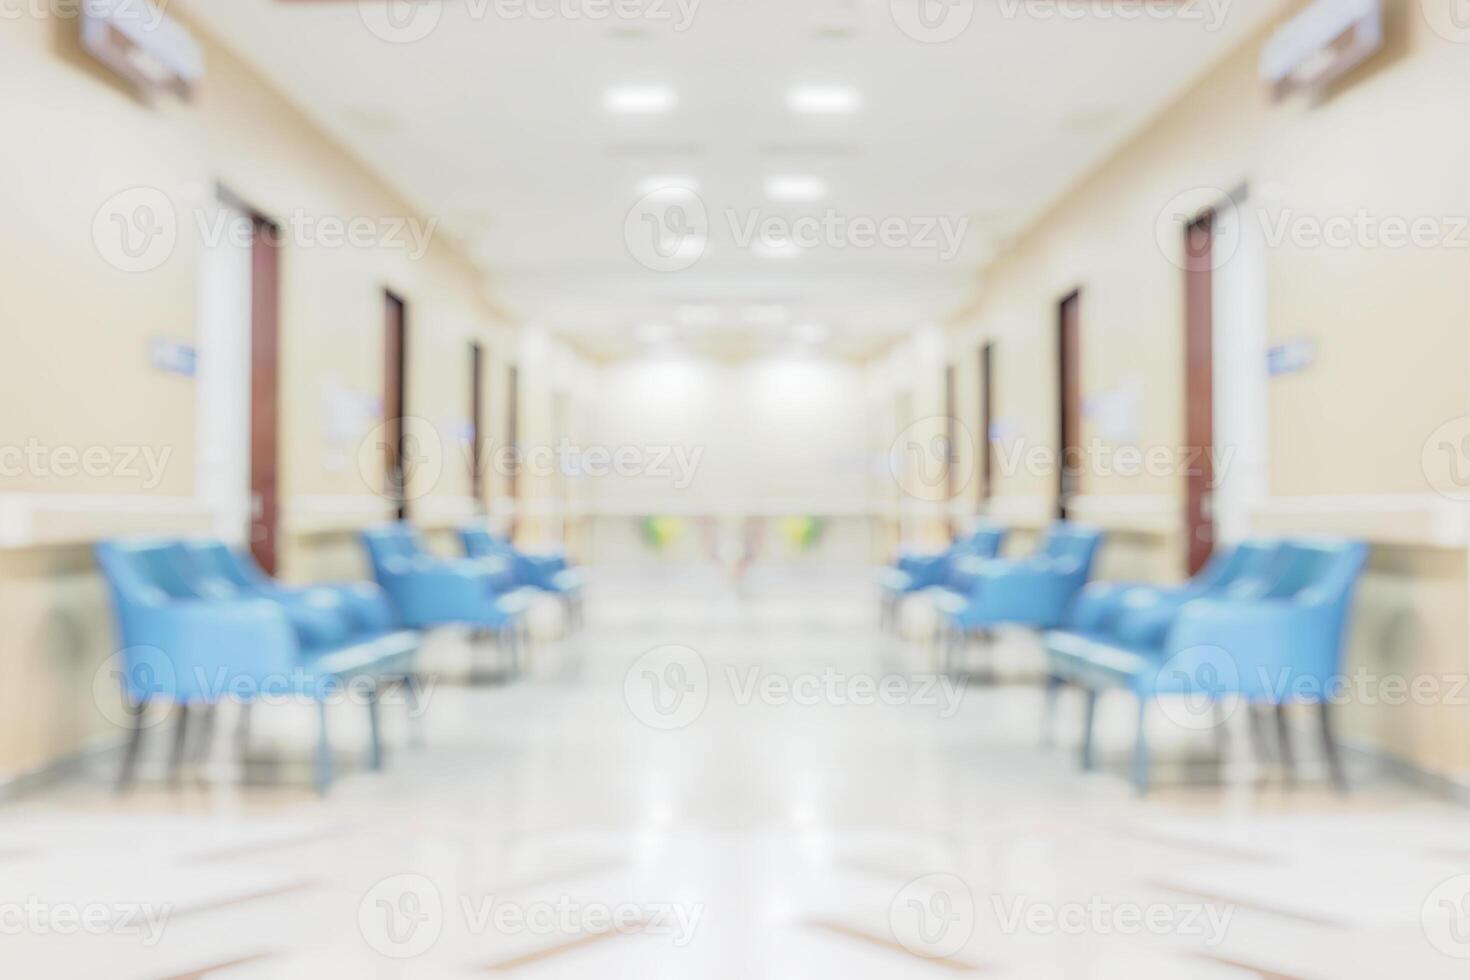 abstrato borrão fundo interior médico clínica hospitalar foto